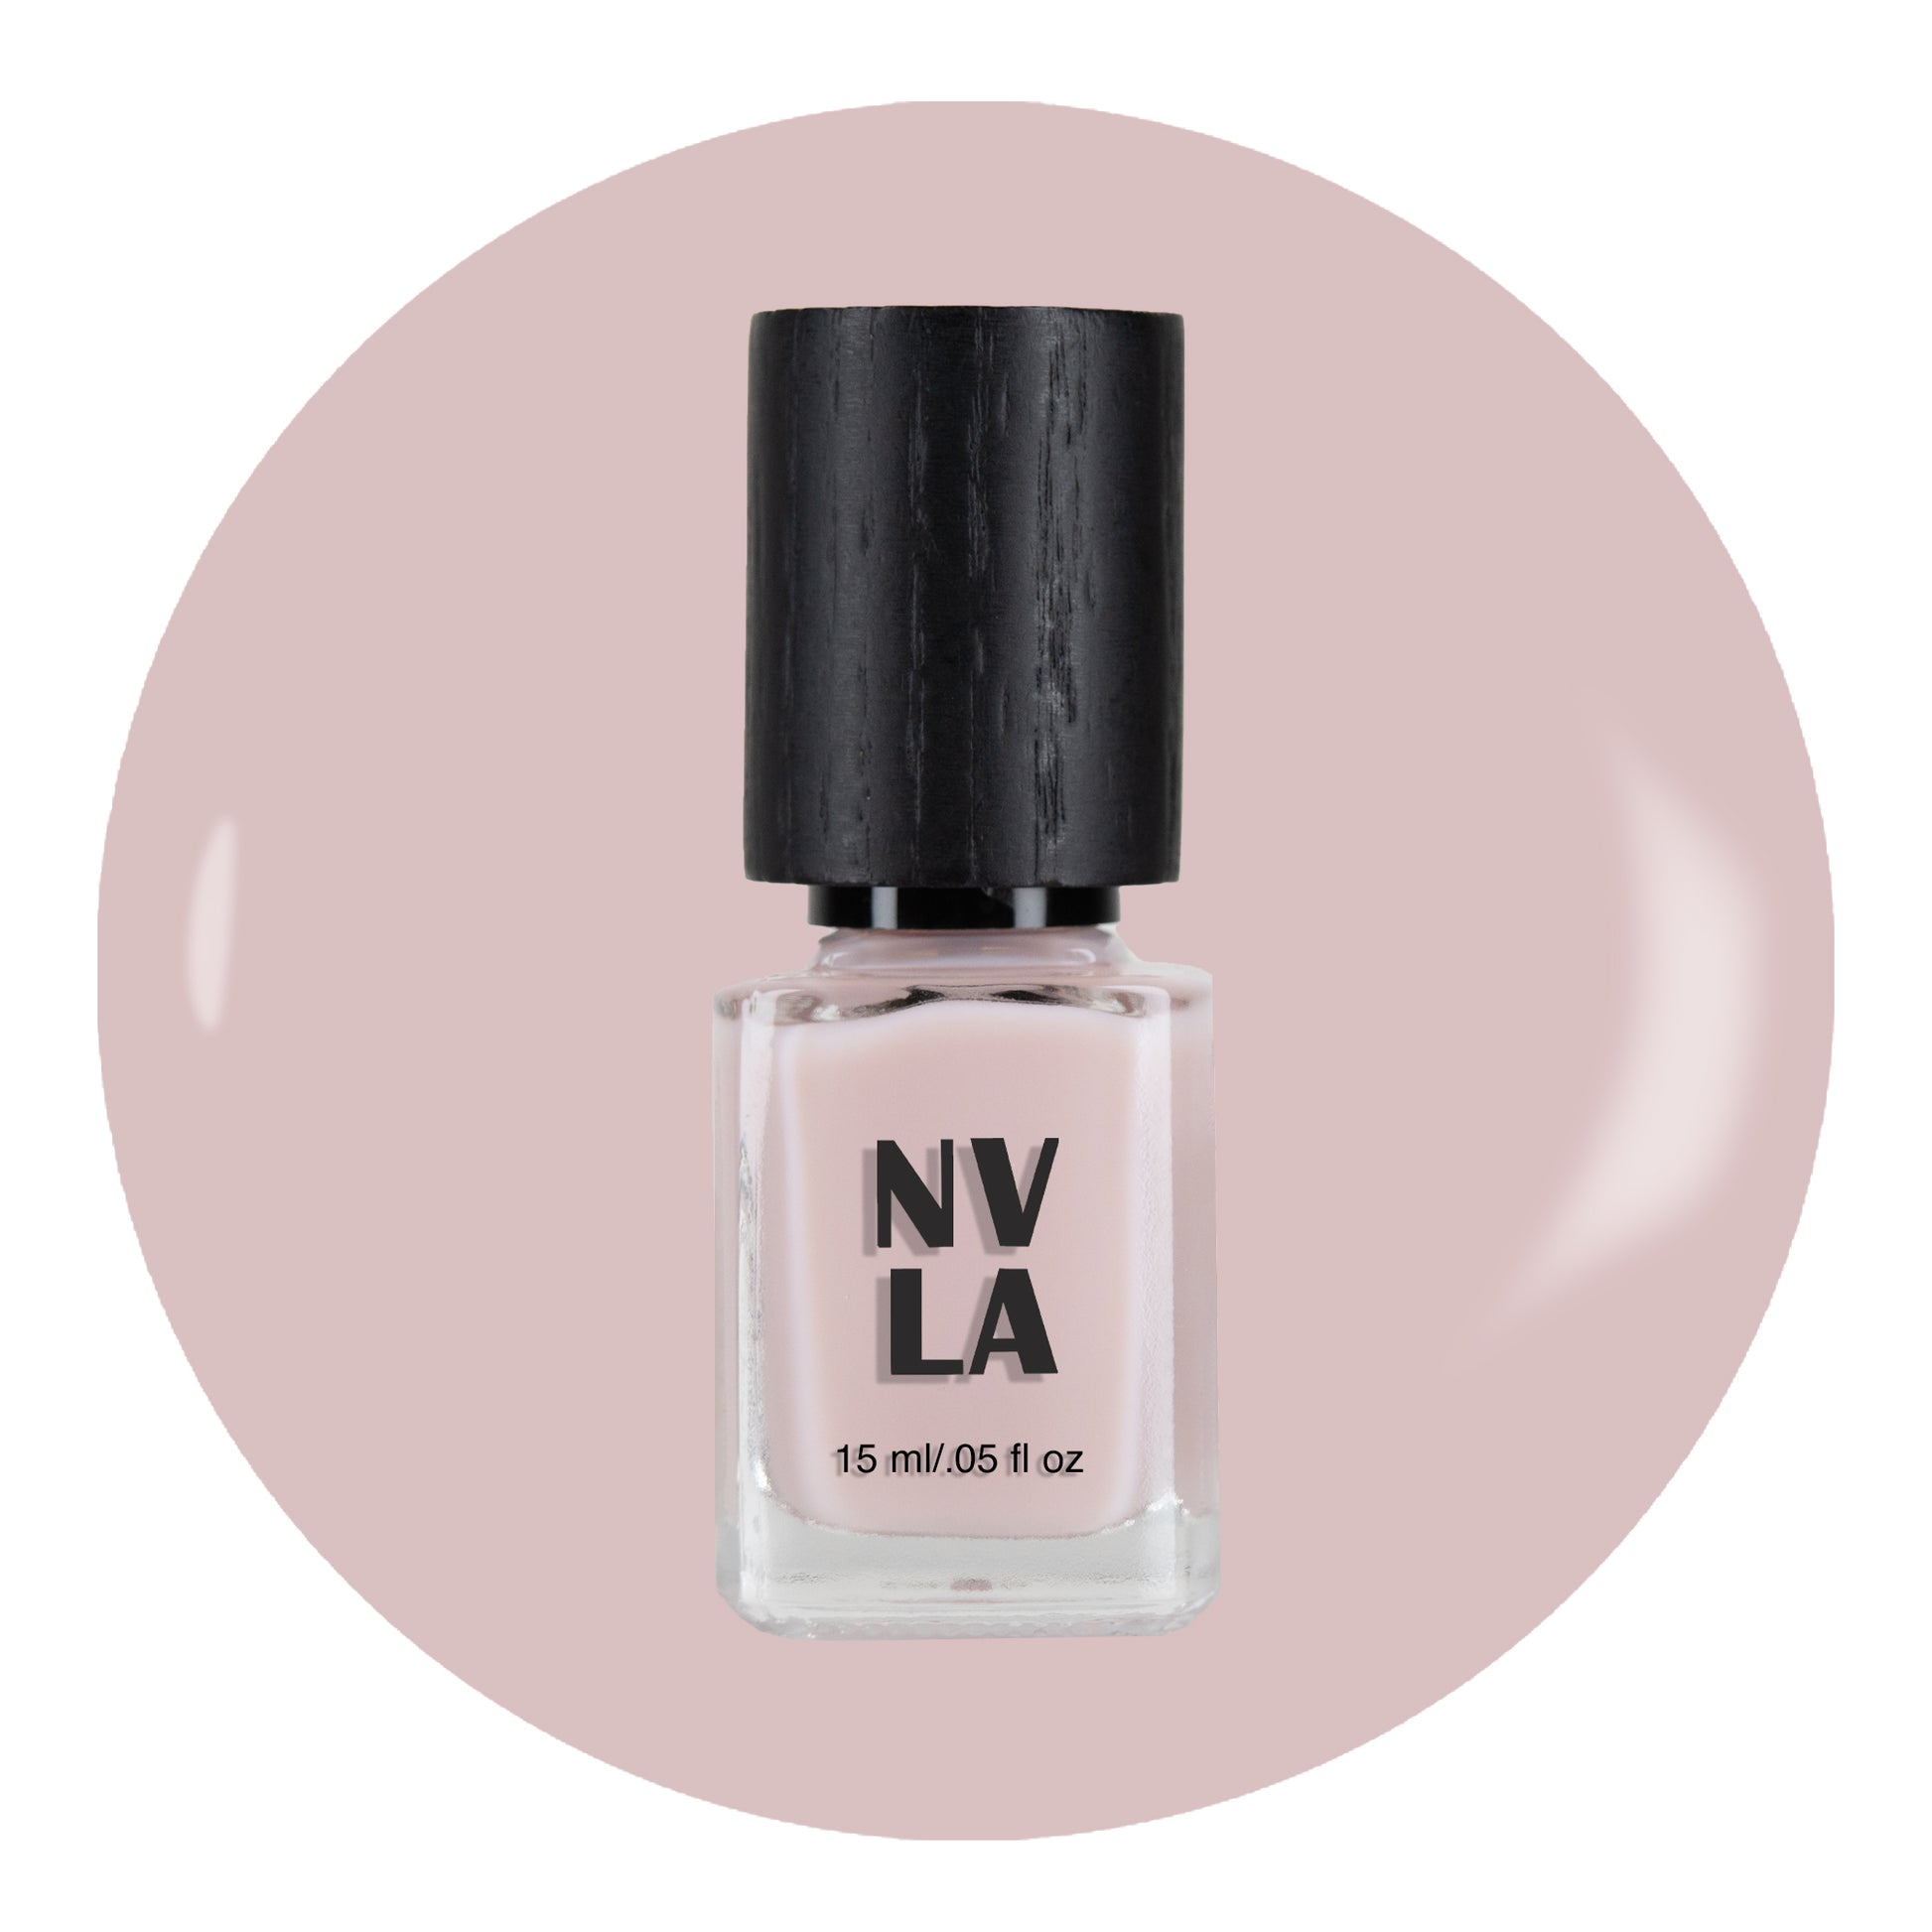 NVLA nail polish Sherry Lansing Sheer